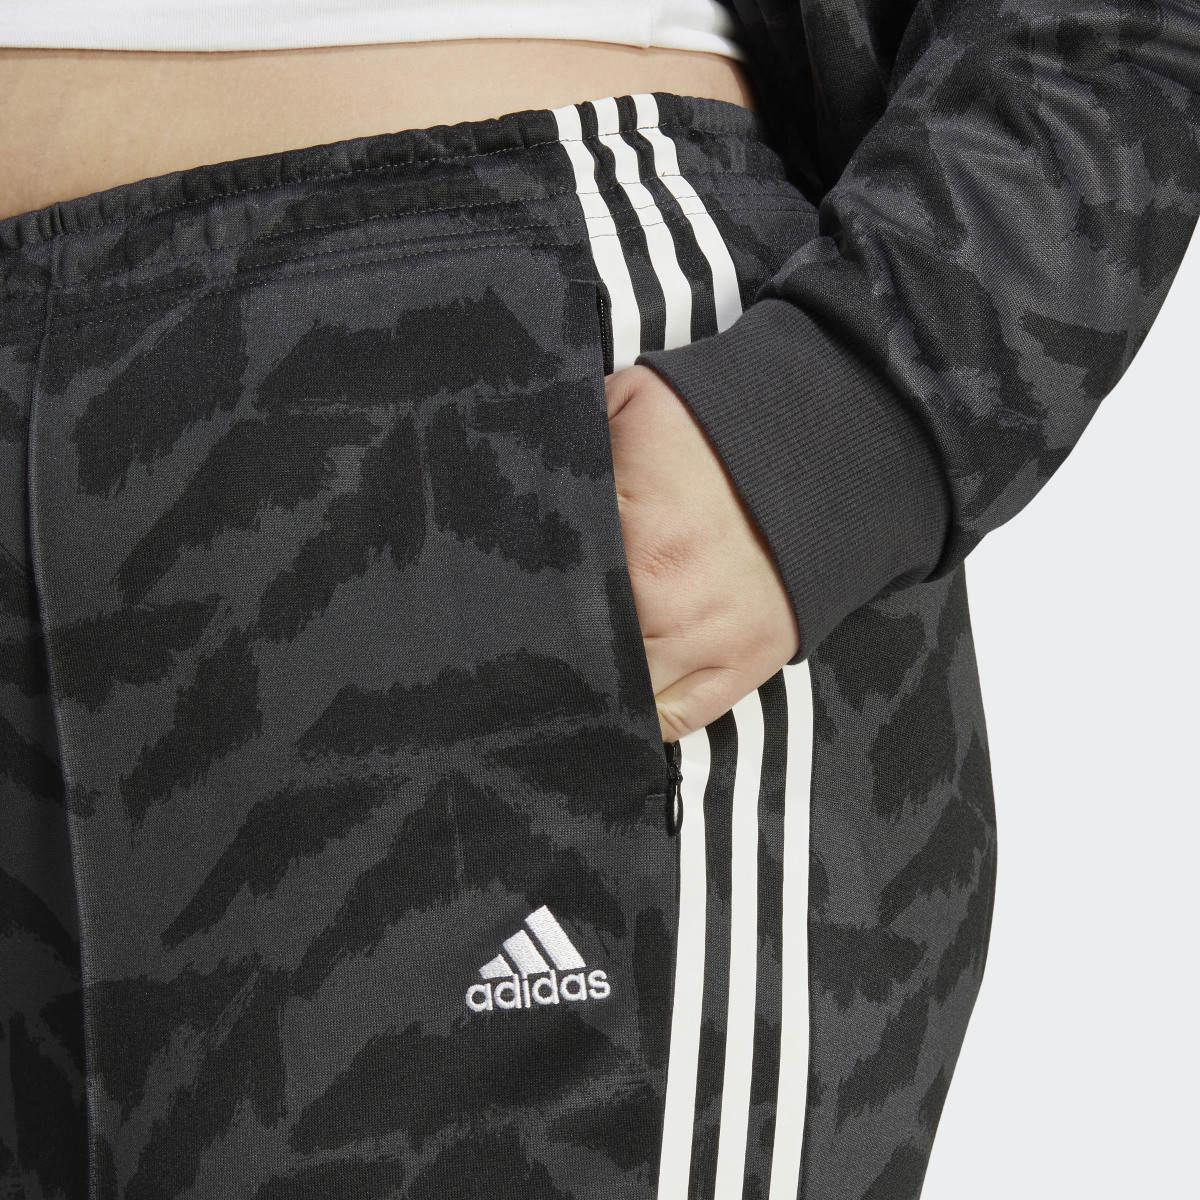 Adidas Tiro Suit Up Lifestyle Track Pant (Plus Size). 5